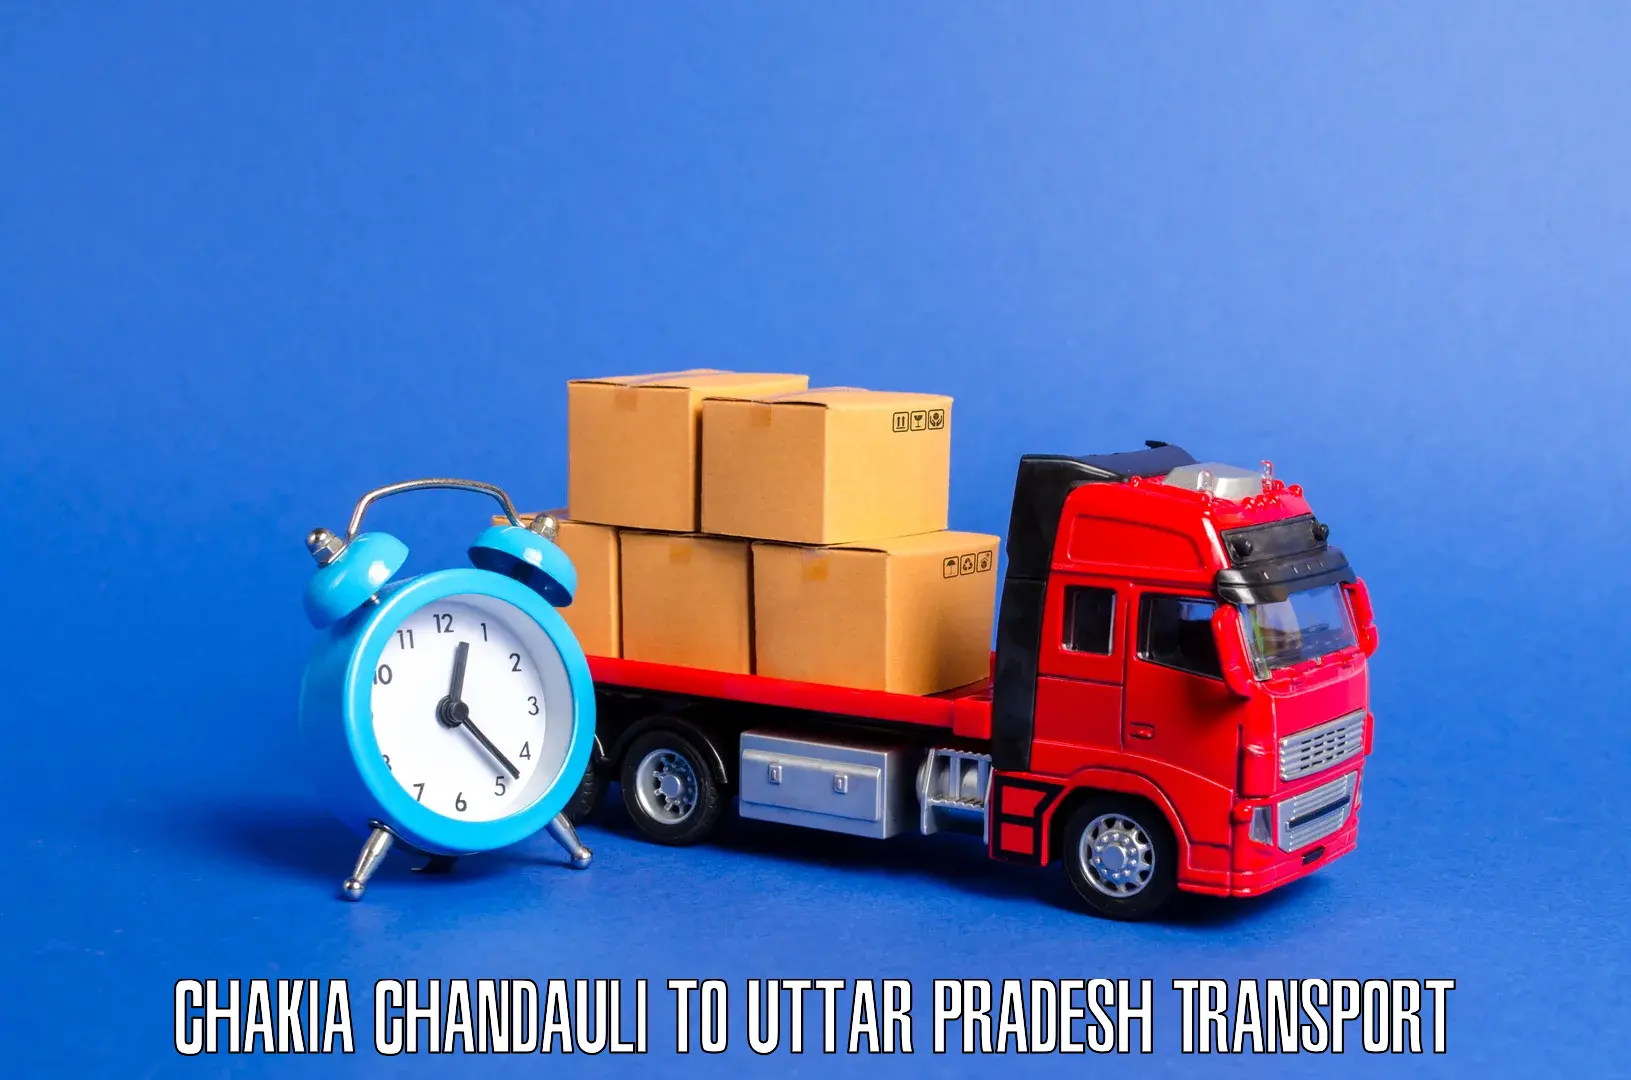 Land transport services Chakia Chandauli to Pilibhit